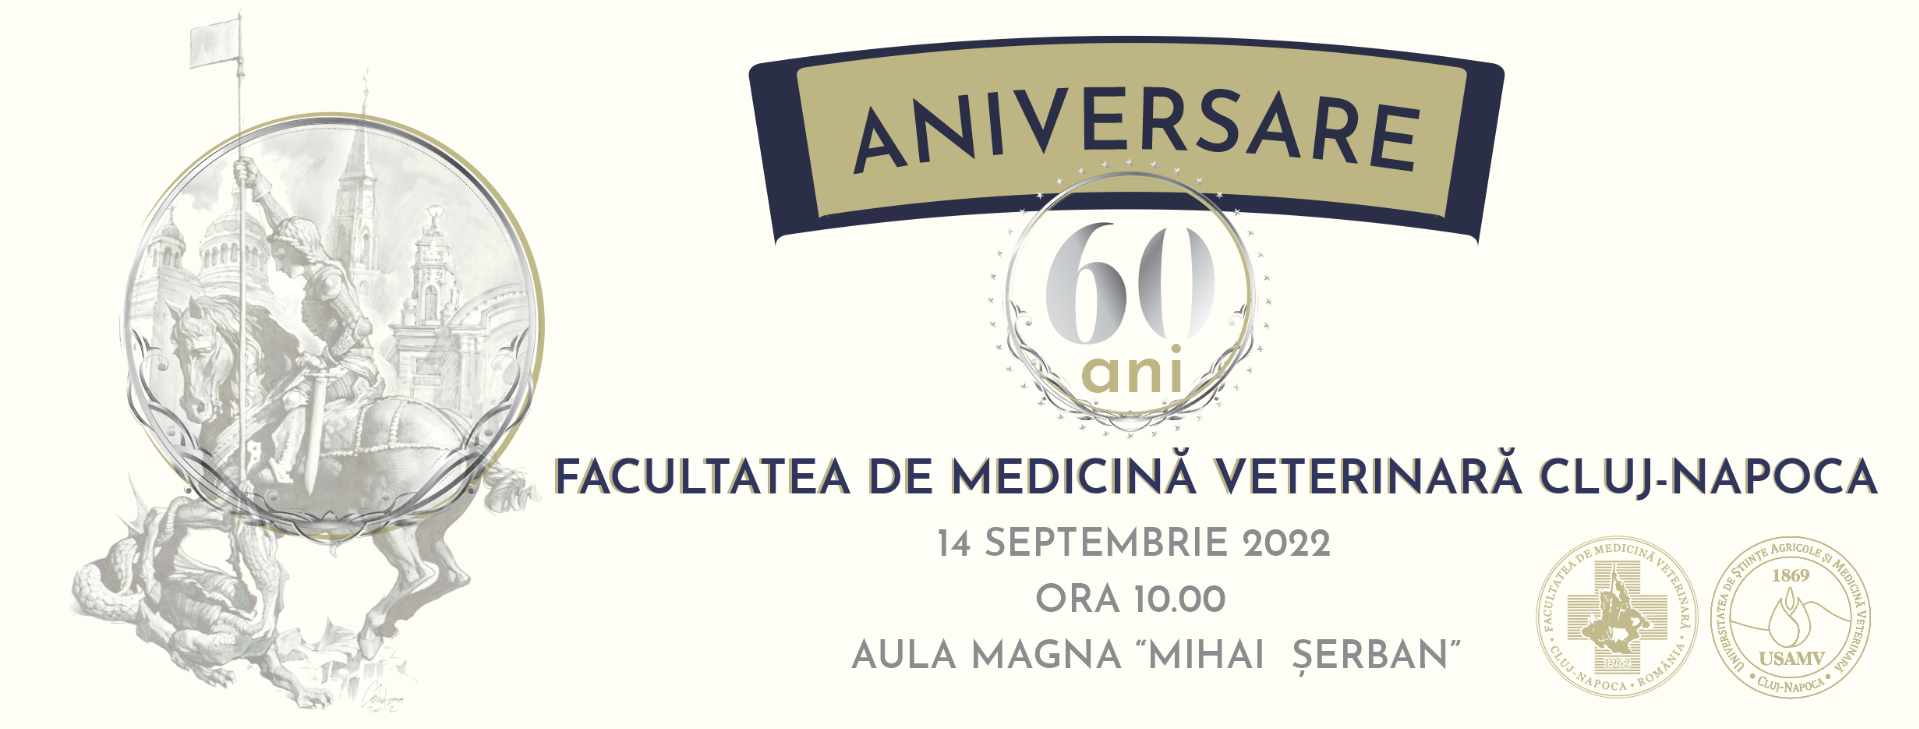 Take-up Touhou Exchangeable USAMV Cluj-Napoca: Facultatea de Medicină Veterinară aniversează 60 de ani  - Viața Medicală